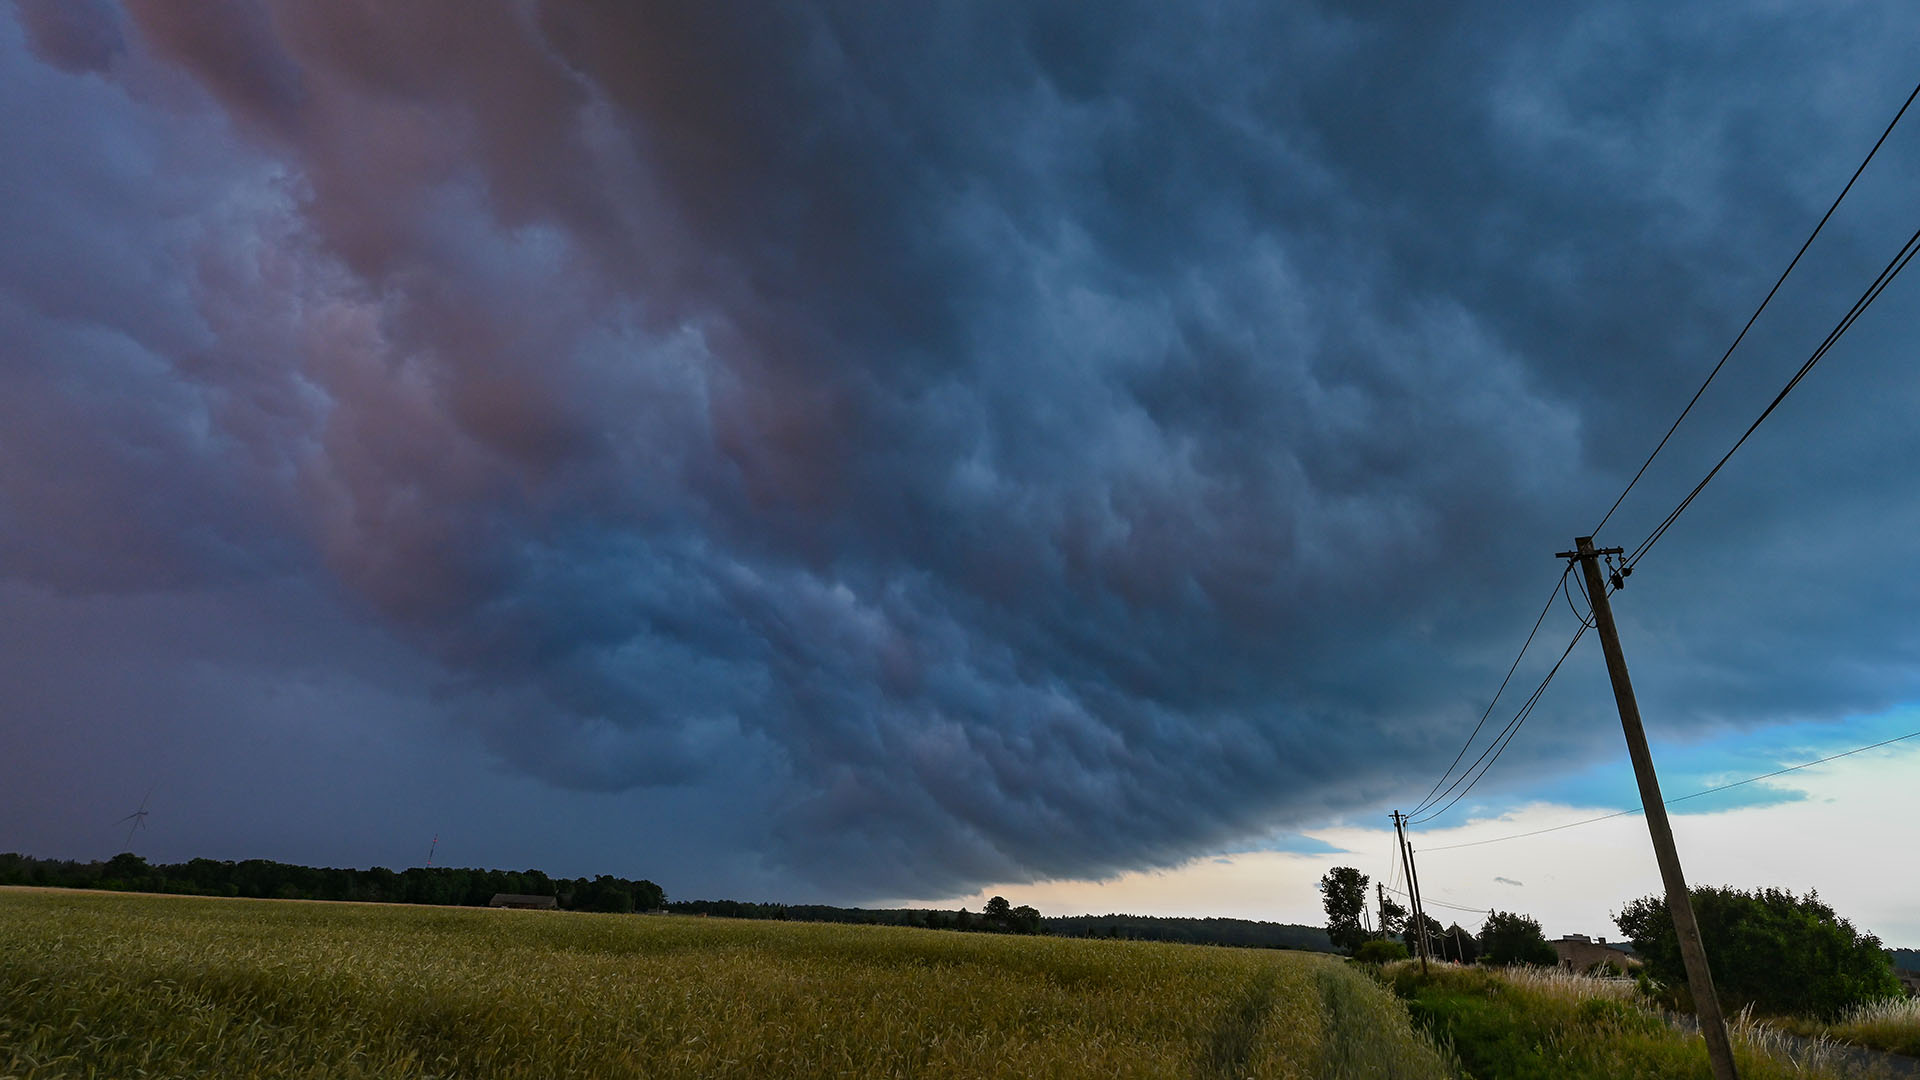 Am späten Abend zieht eine Gewitterzelle mit dunklen Regenwolken über die Landschaft. | picture alliance/dpa